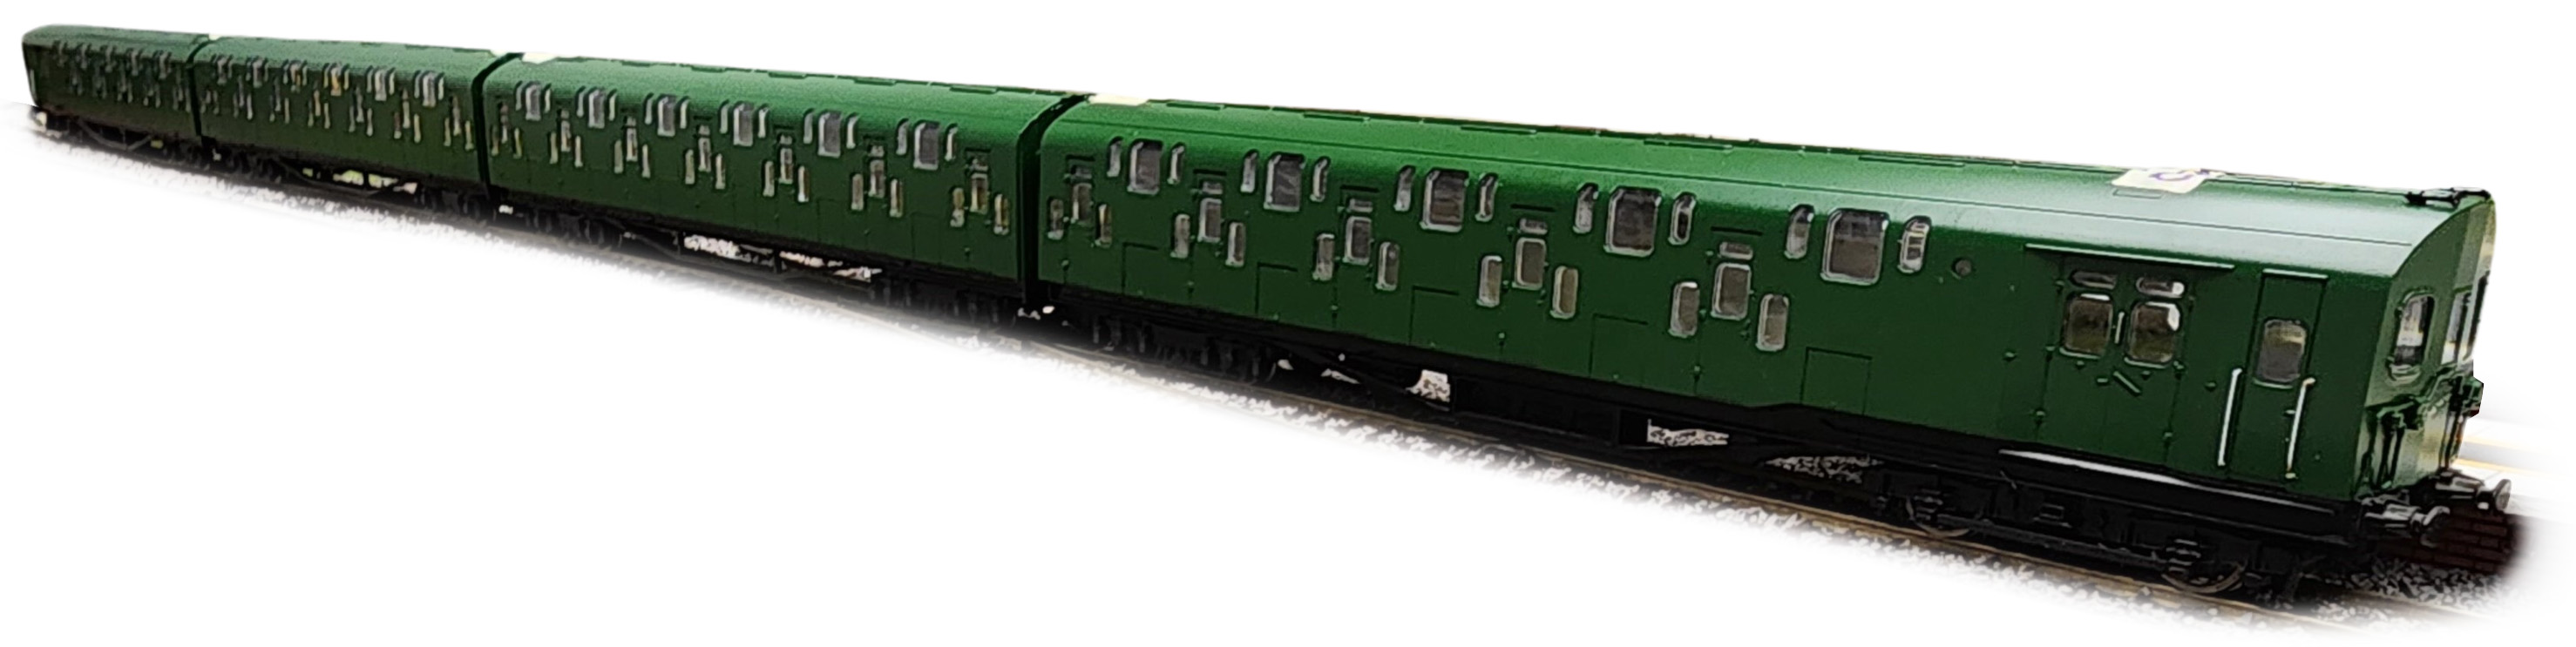 KR Models OO Gauge (1:76 Scale) Class 4-DD Double-Decker SR